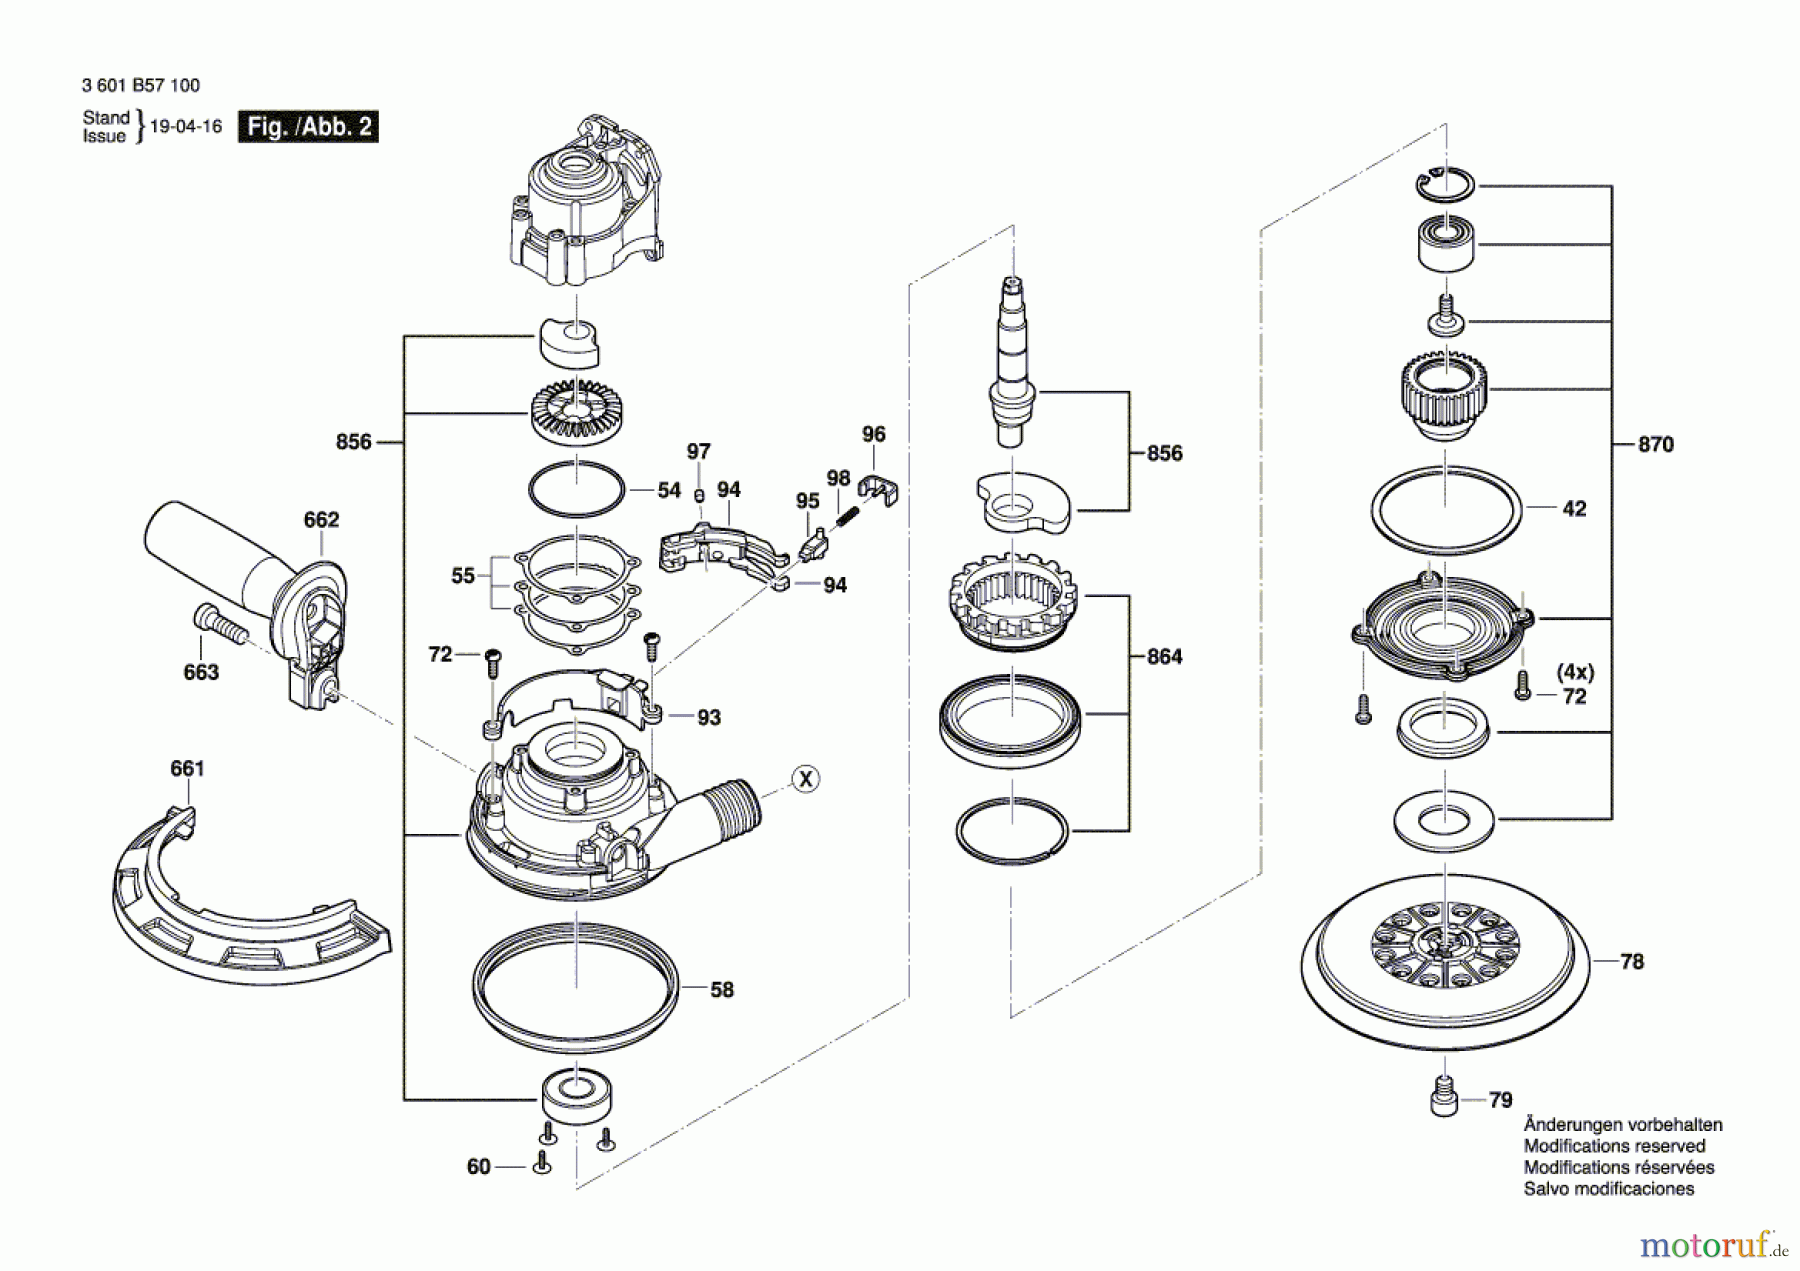  Bosch Werkzeug Exzenterschleifer GET 75-150 Seite 2